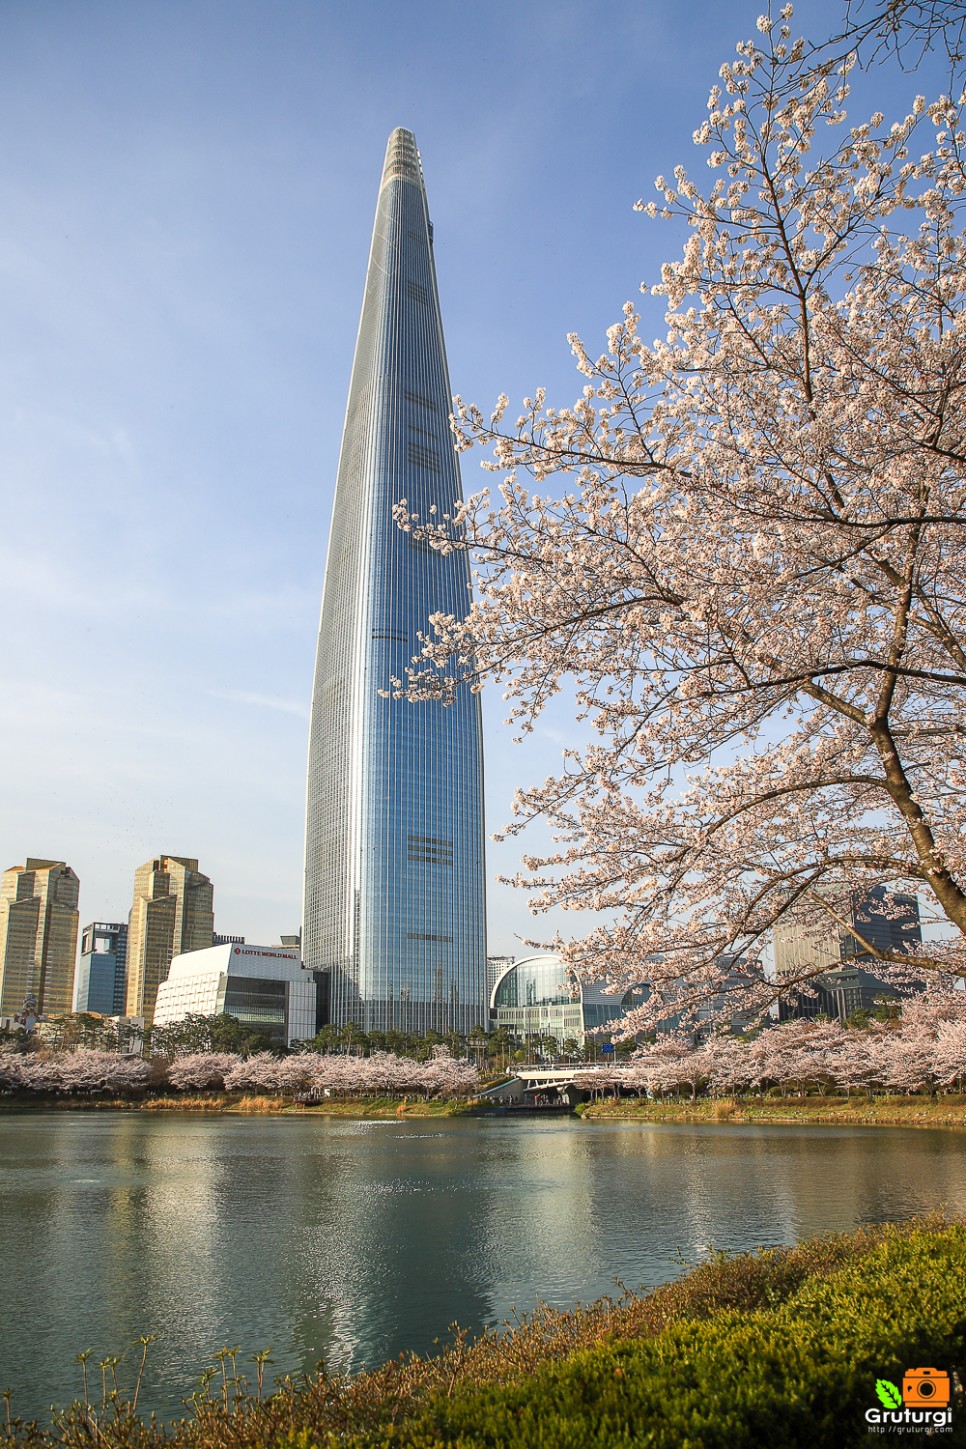 서울 벚꽃명소 잠실 석촌호수 벨리곰과 서울 꽃구경